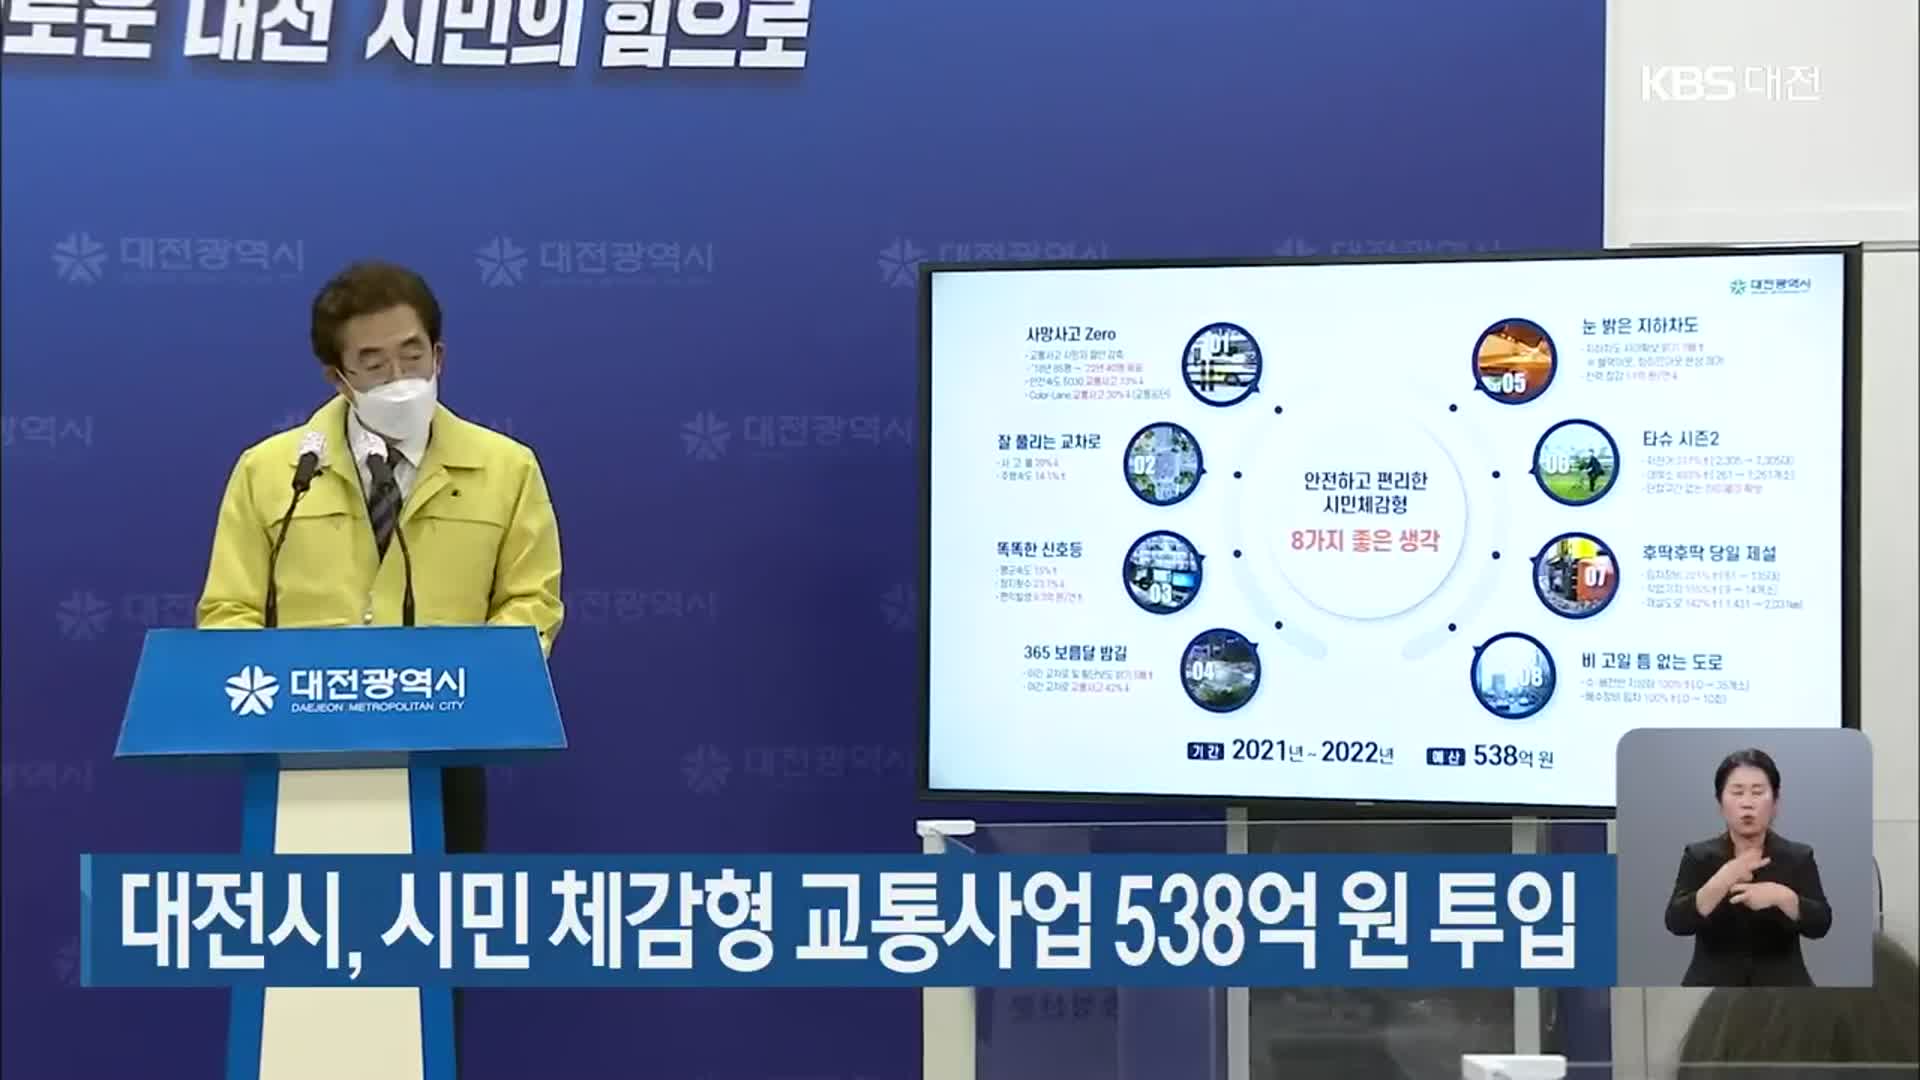 대전시, 시민 체감형 교통사업 538억 원 투입